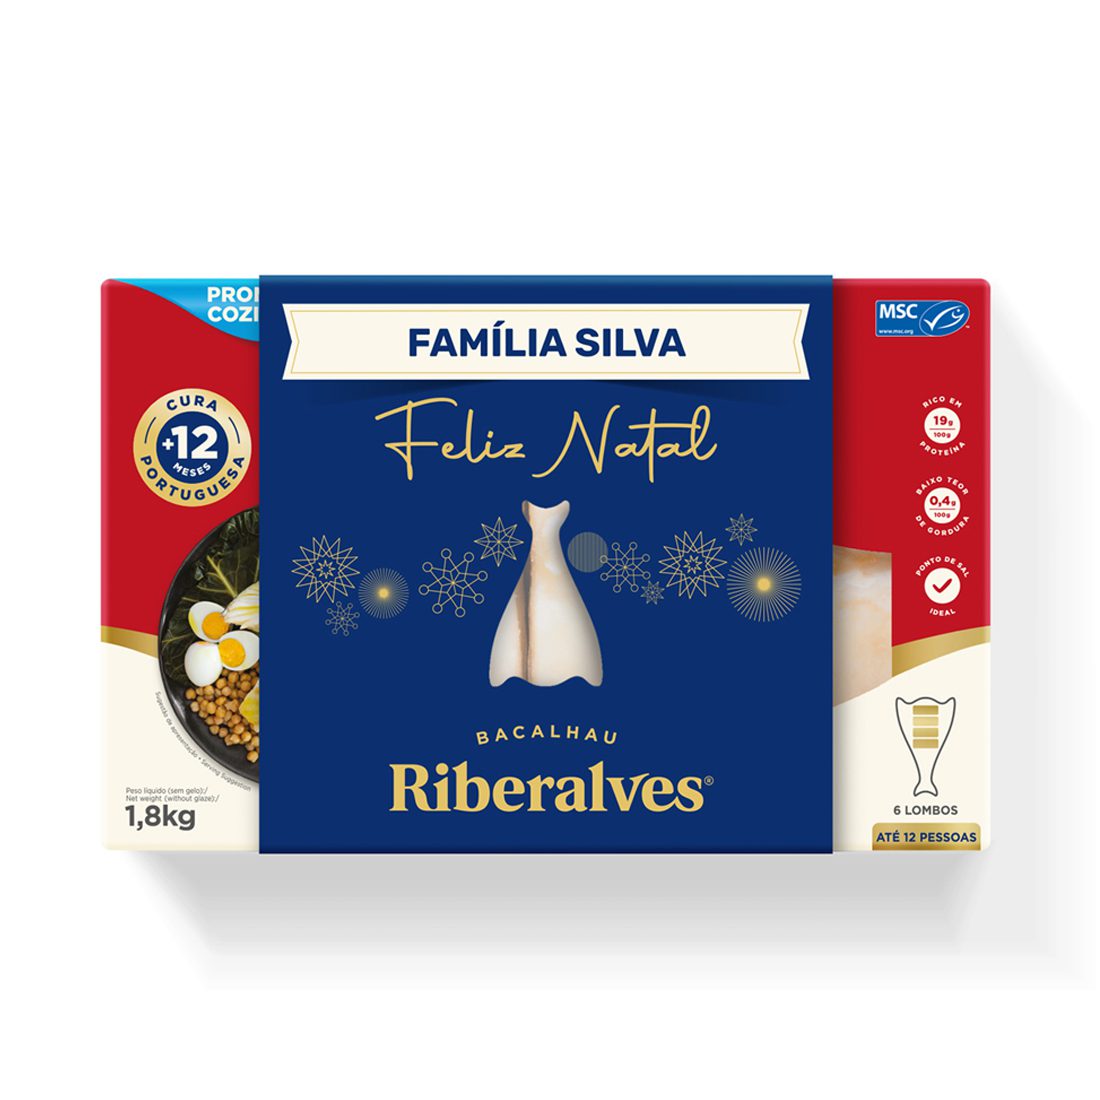 Bacalhau Riberalves lança pack especial de Natal e tributo às famílias portuguesas 